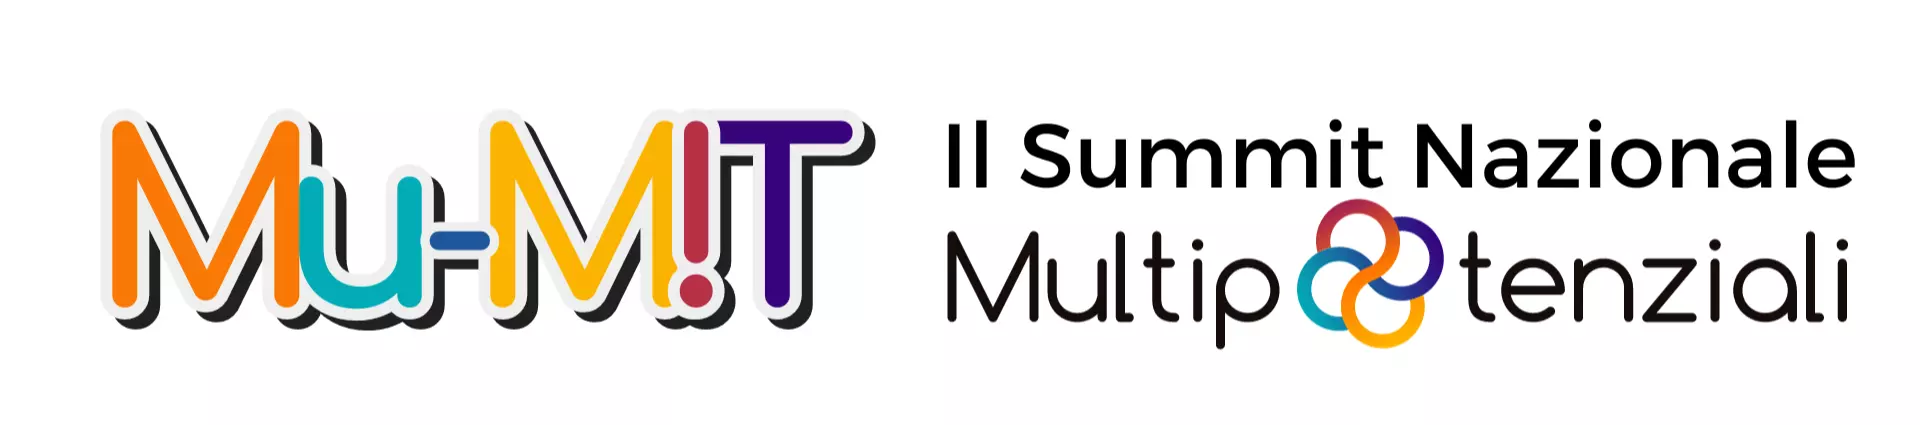 Mu-mit-il-summit-sulla-multipotenzialità